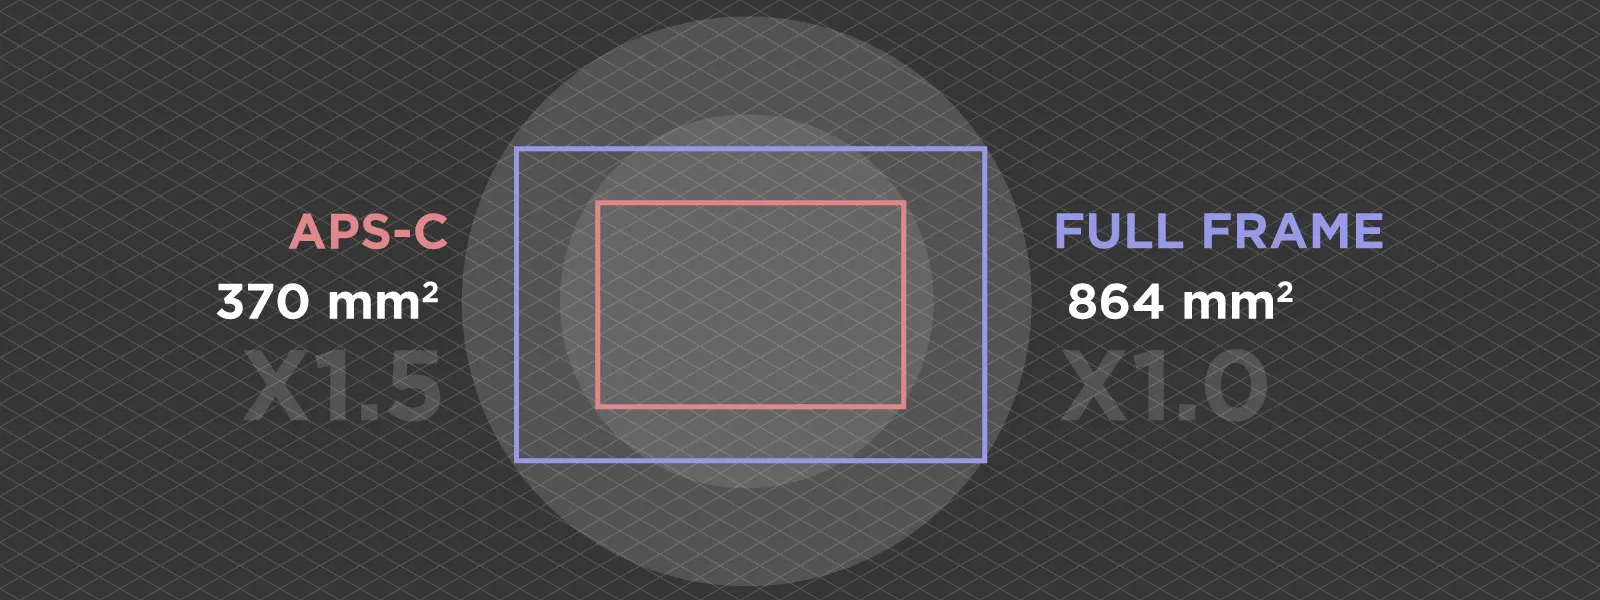 aps-c-vs-full-frame-photogrammetry-sensor-sizes